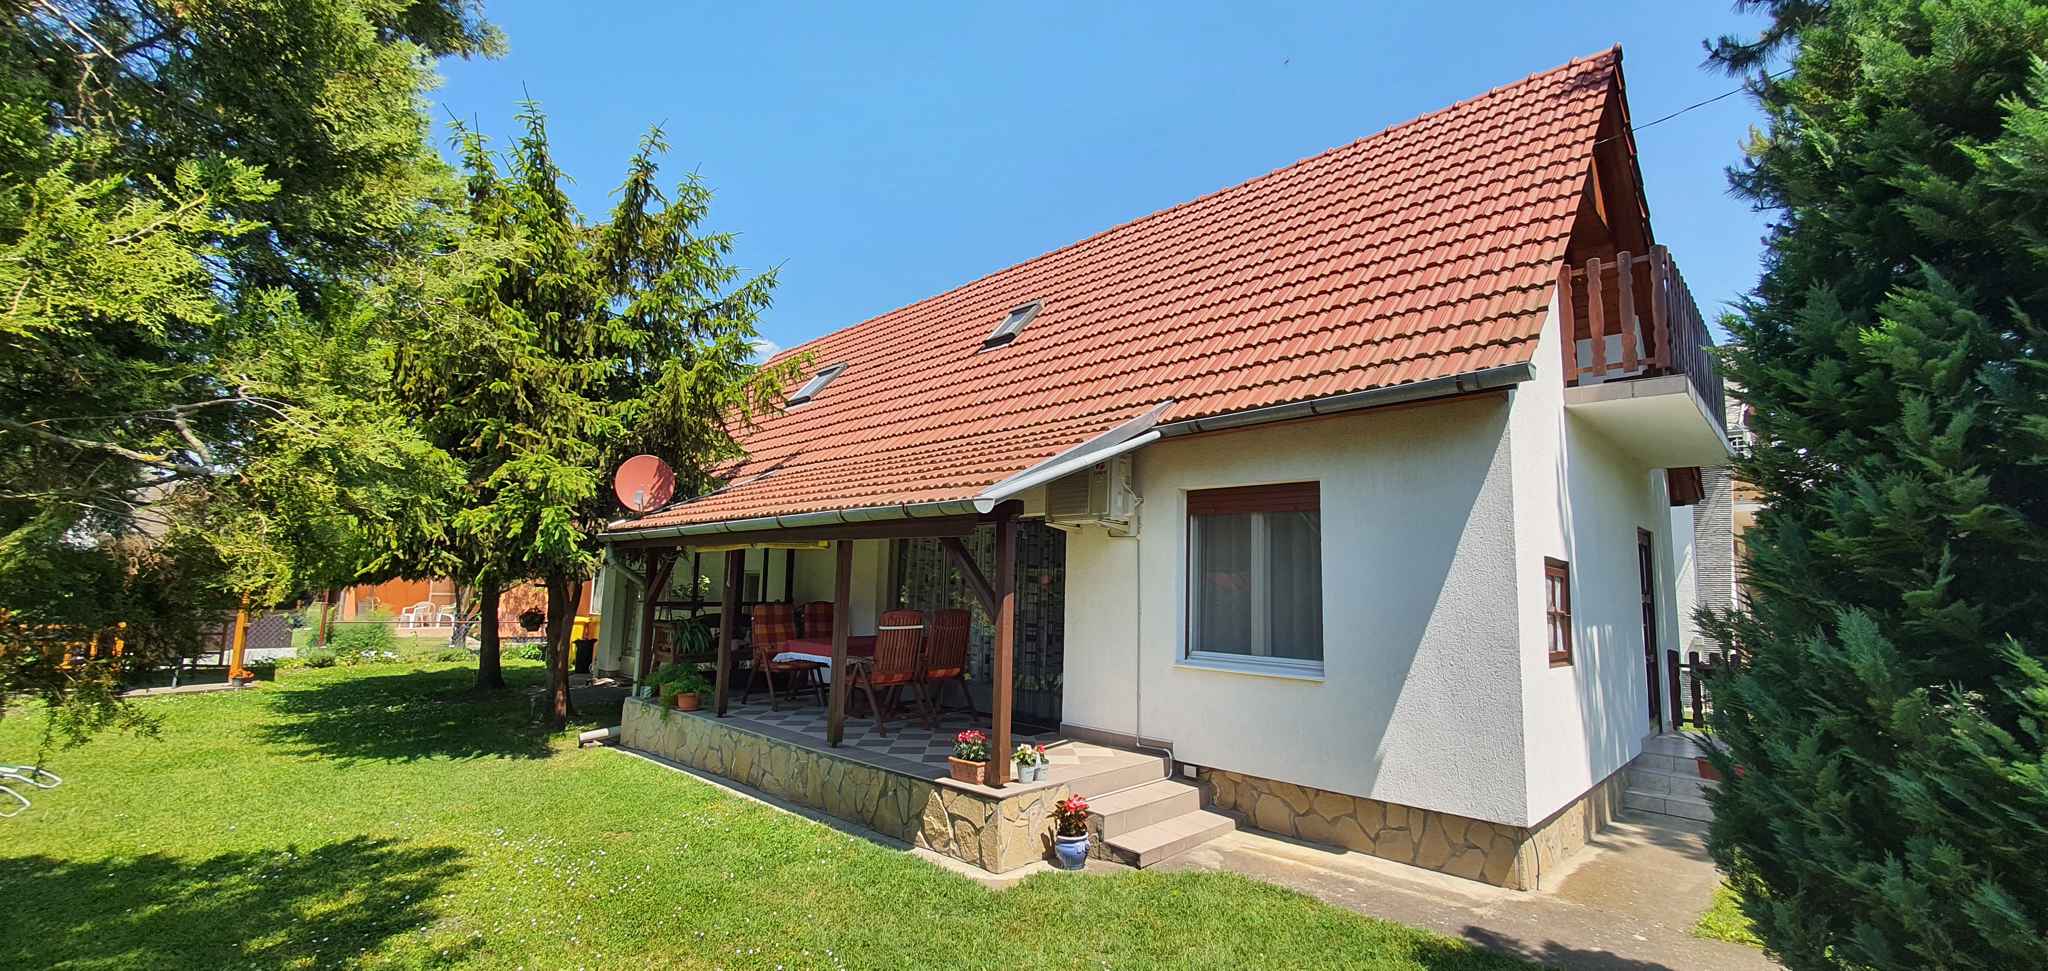 Ferienwohnung mit Gartenpavillon und 2 Bäder  in Ungarn